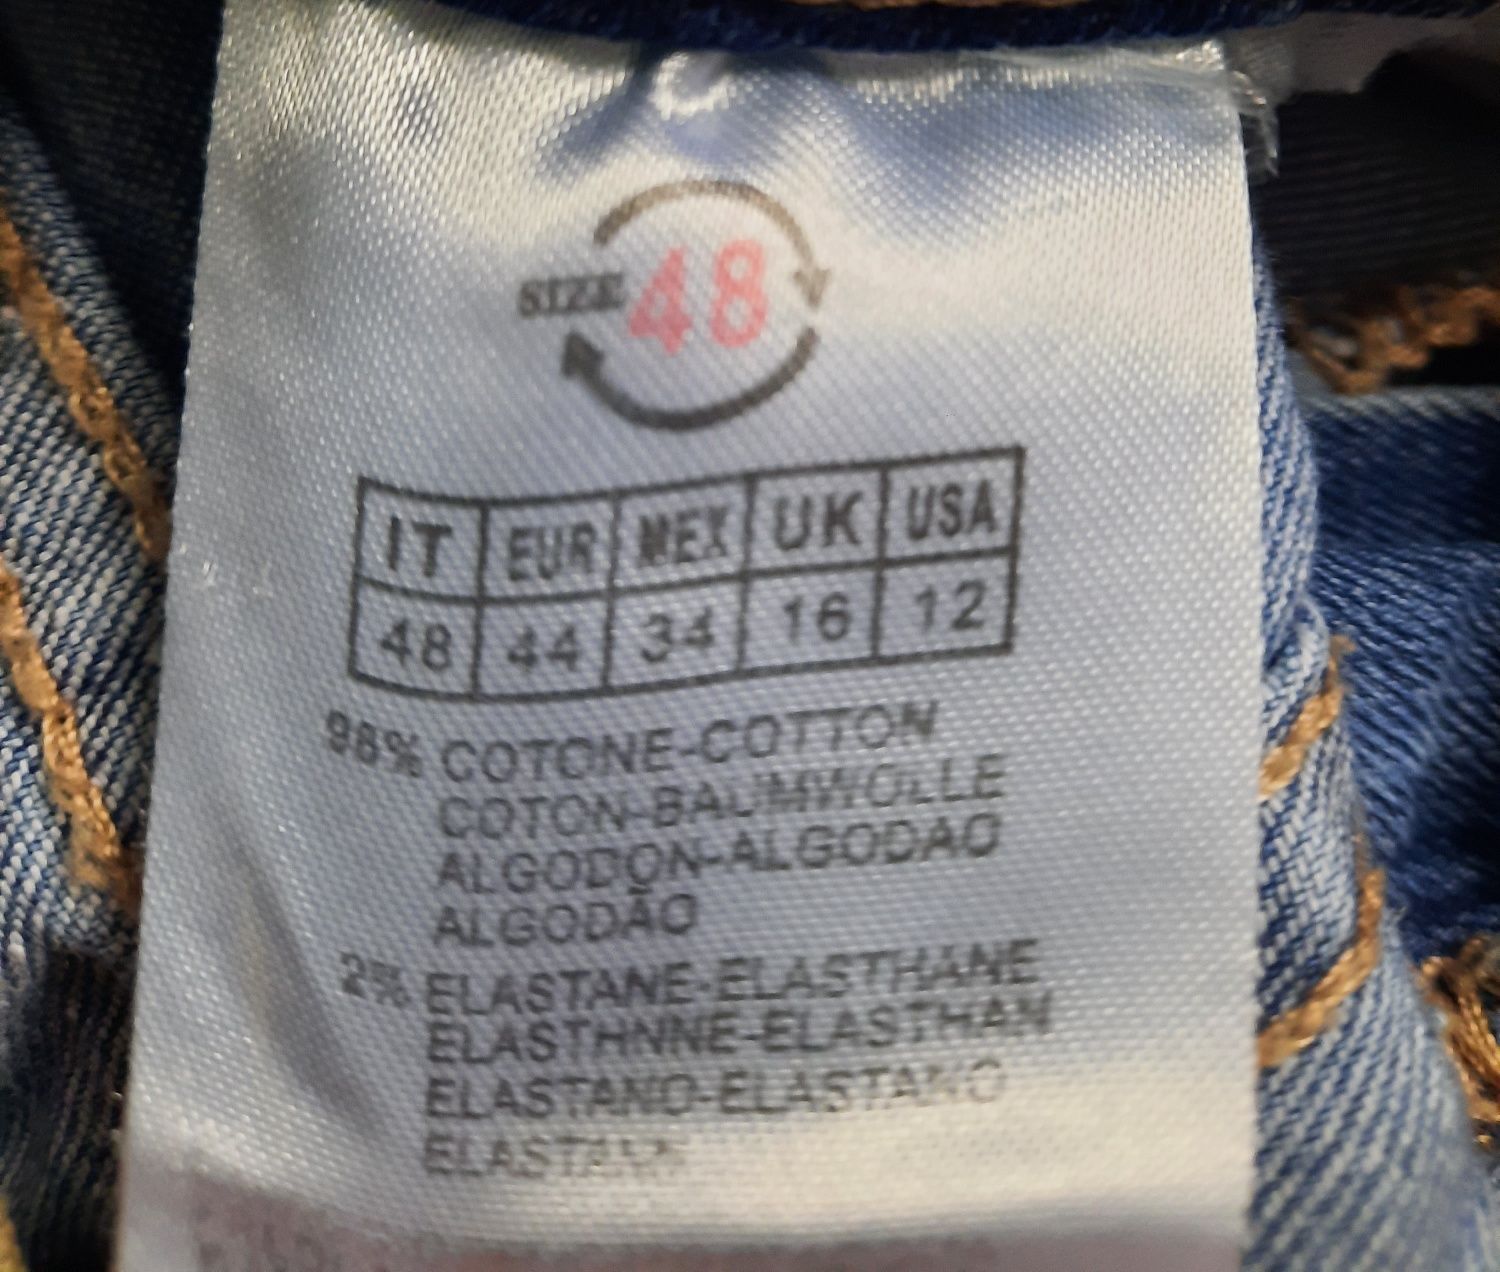 Spodnie jeans błękit cieniowane z modnymi rozdarciami Pas 80cm